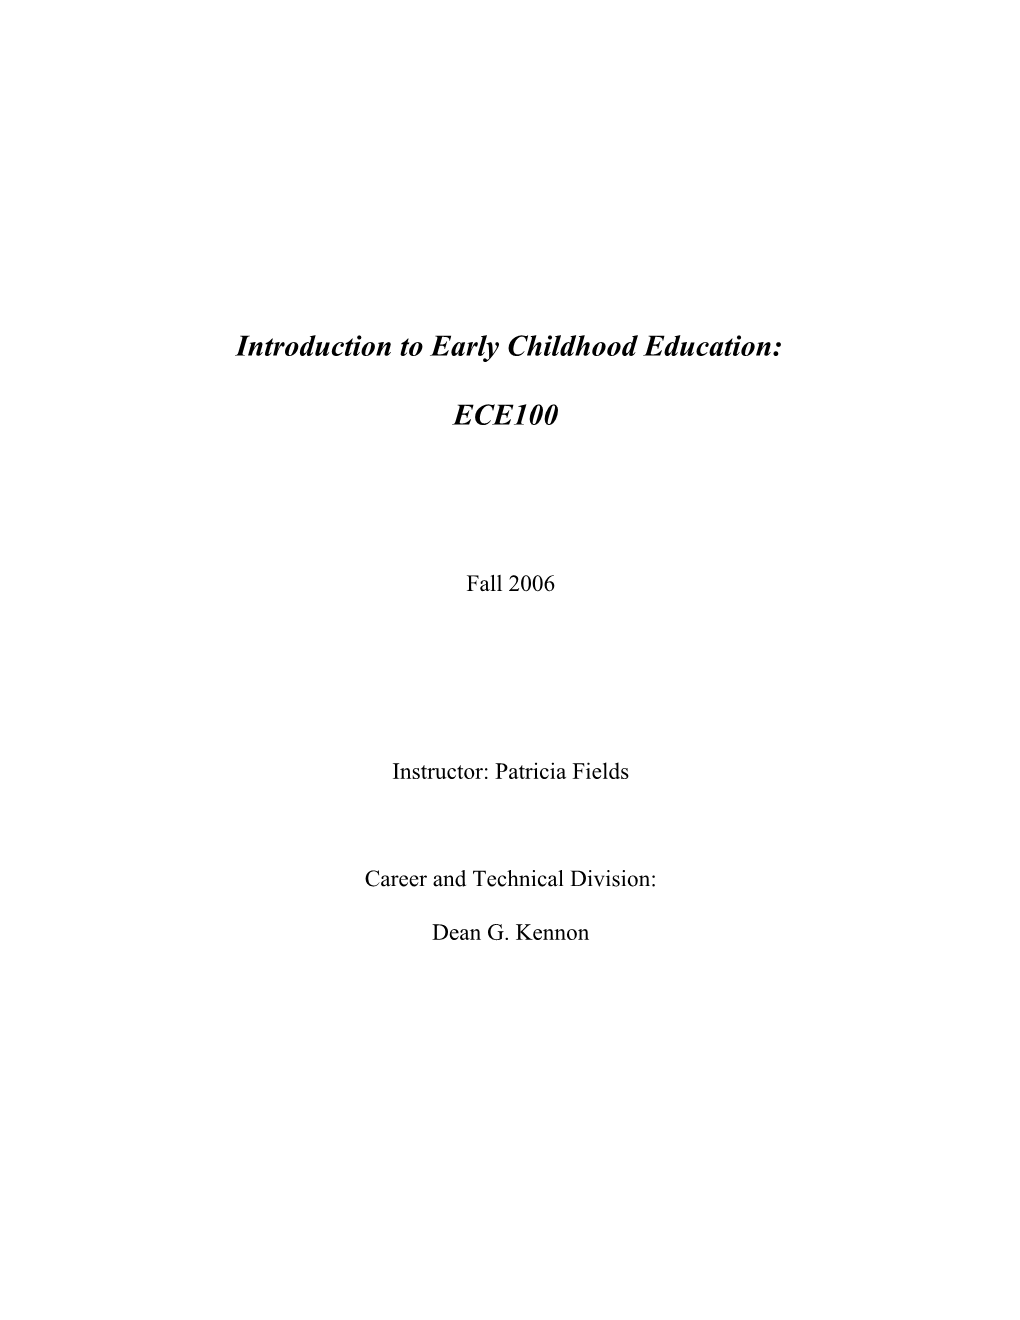 COURSE TITLE: Child Care Practicum I